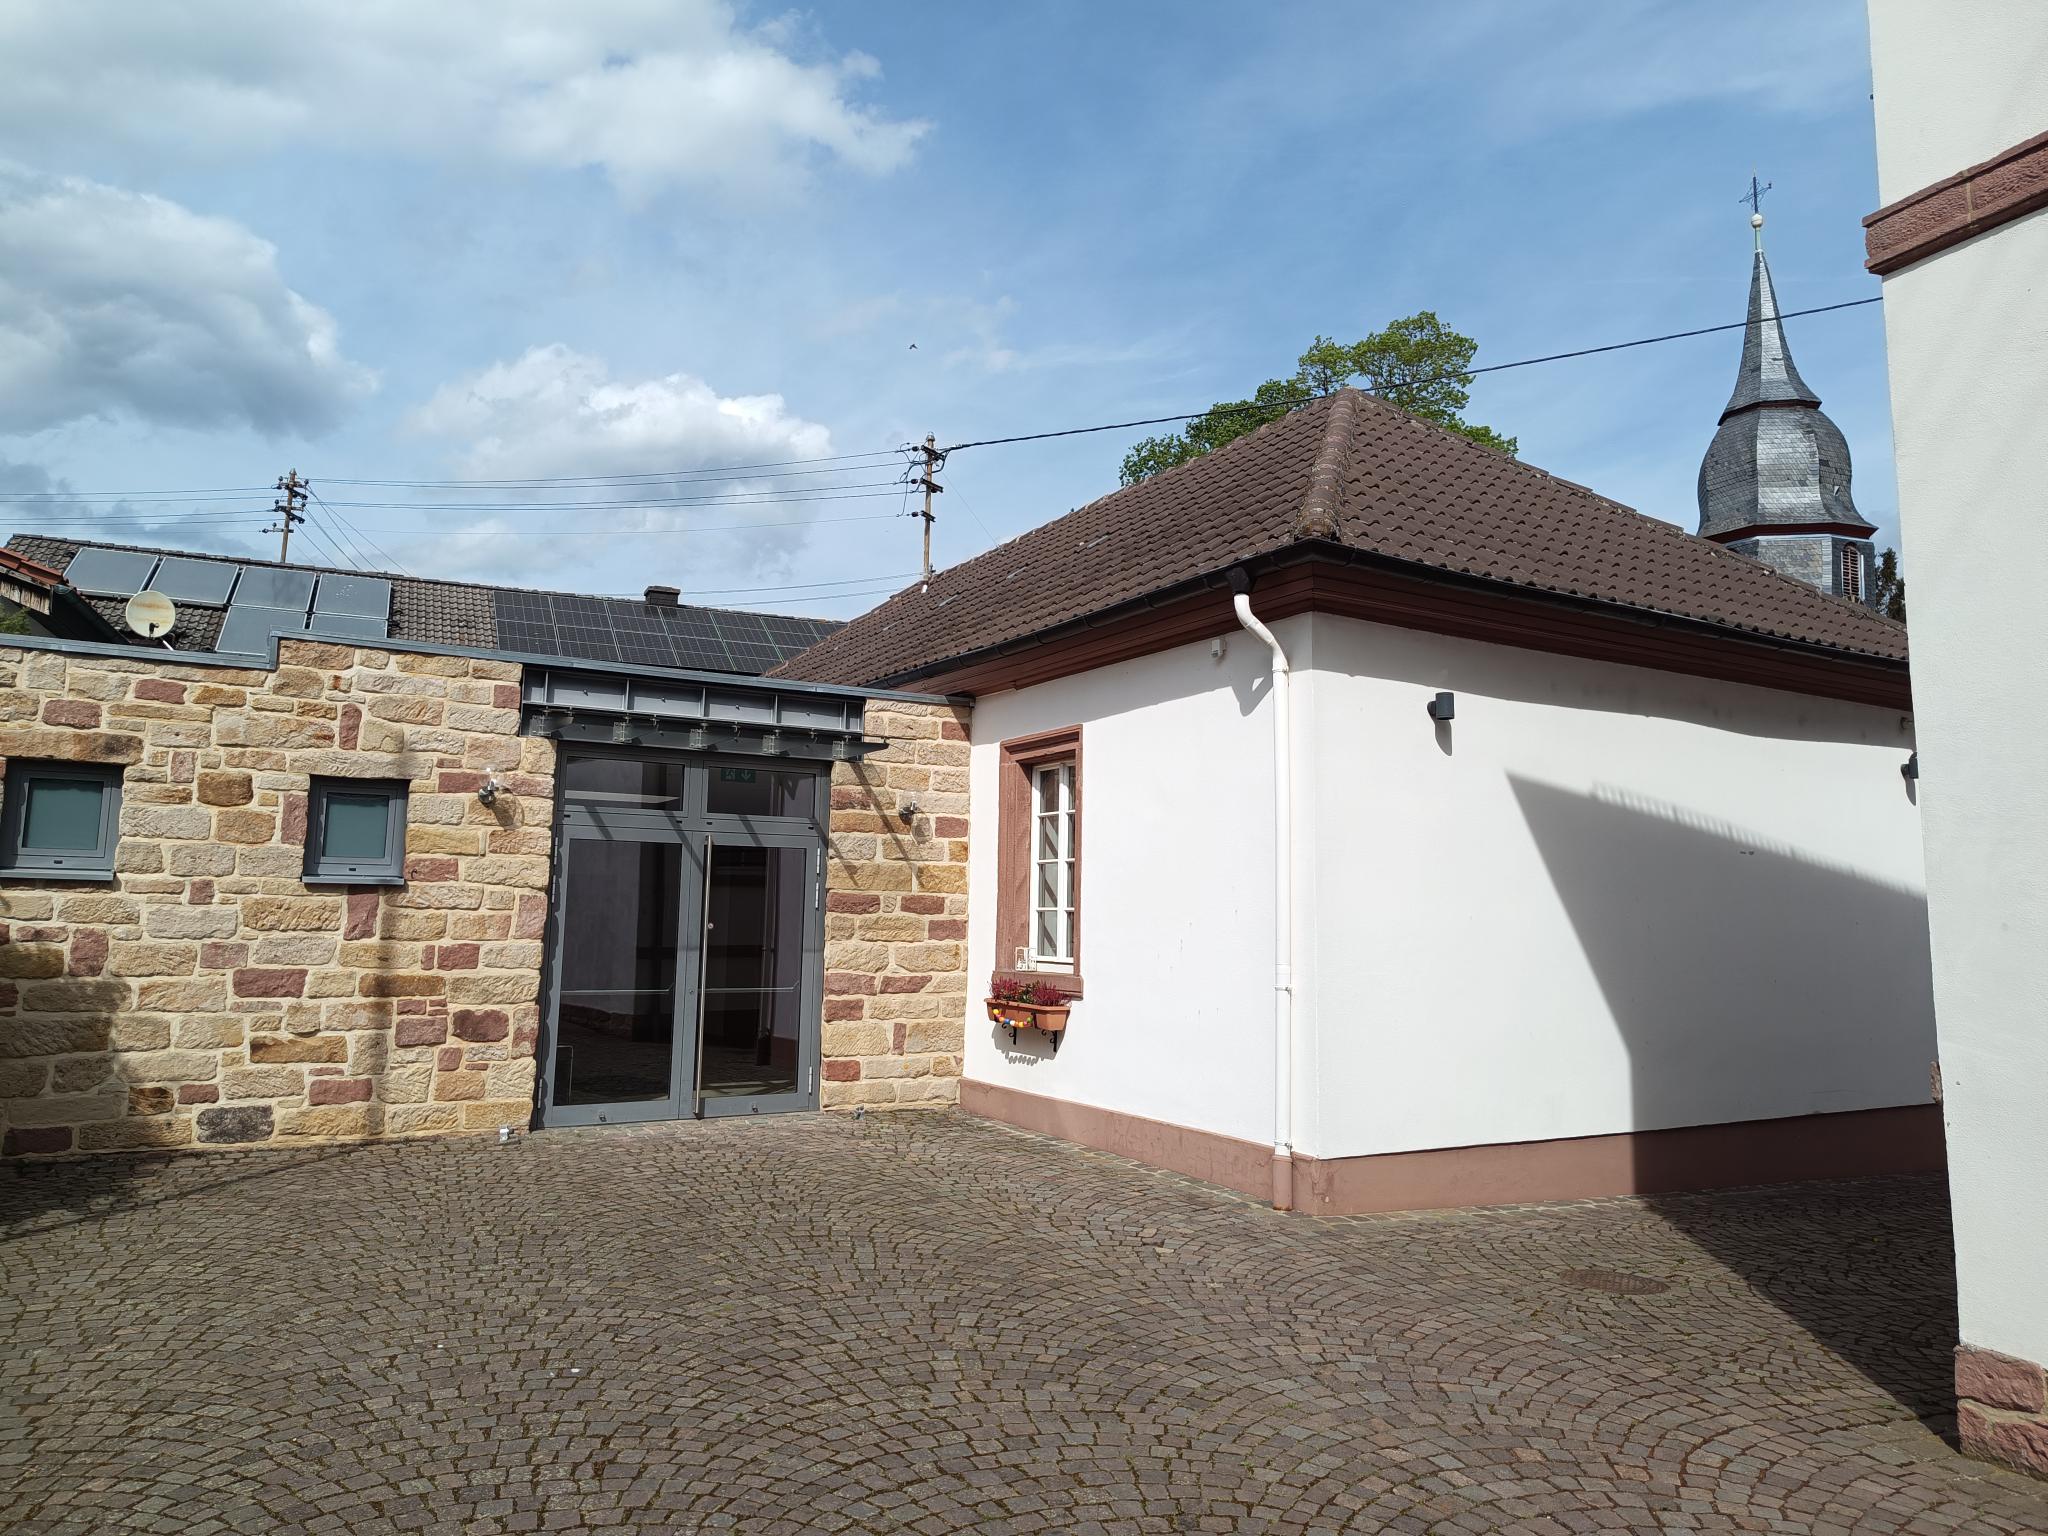 Datei:Dorfgemeinschaftshaus Kleinfischlingen 1.jpeg